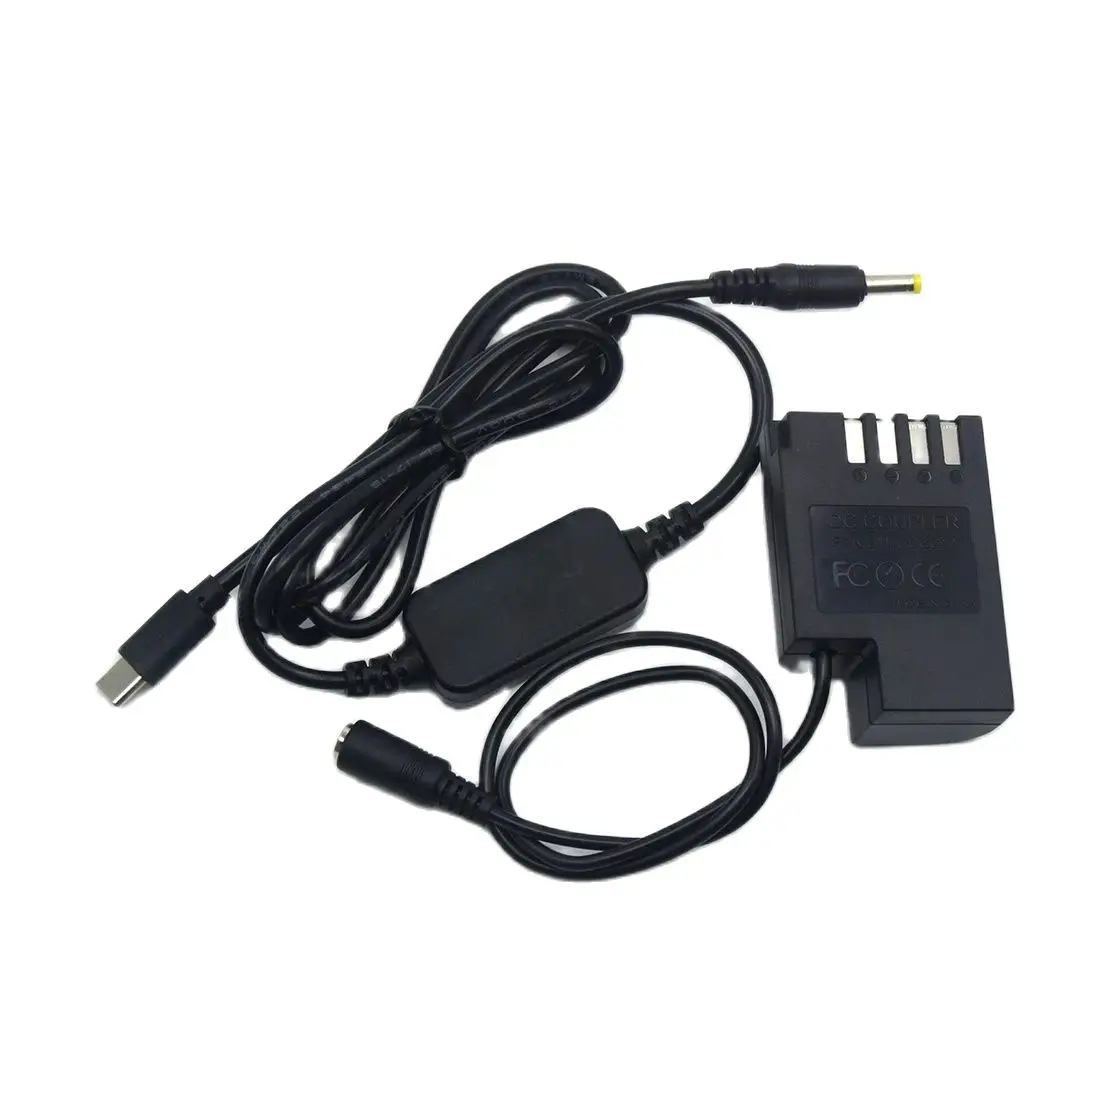 

USB Type C Cable DCC12 DC Coupler Full Decoded BLF19 Dummy Battery for Panasonic DMC-GH5s GH5 DMC-GH4 GH3 DMC-GH9 Camera